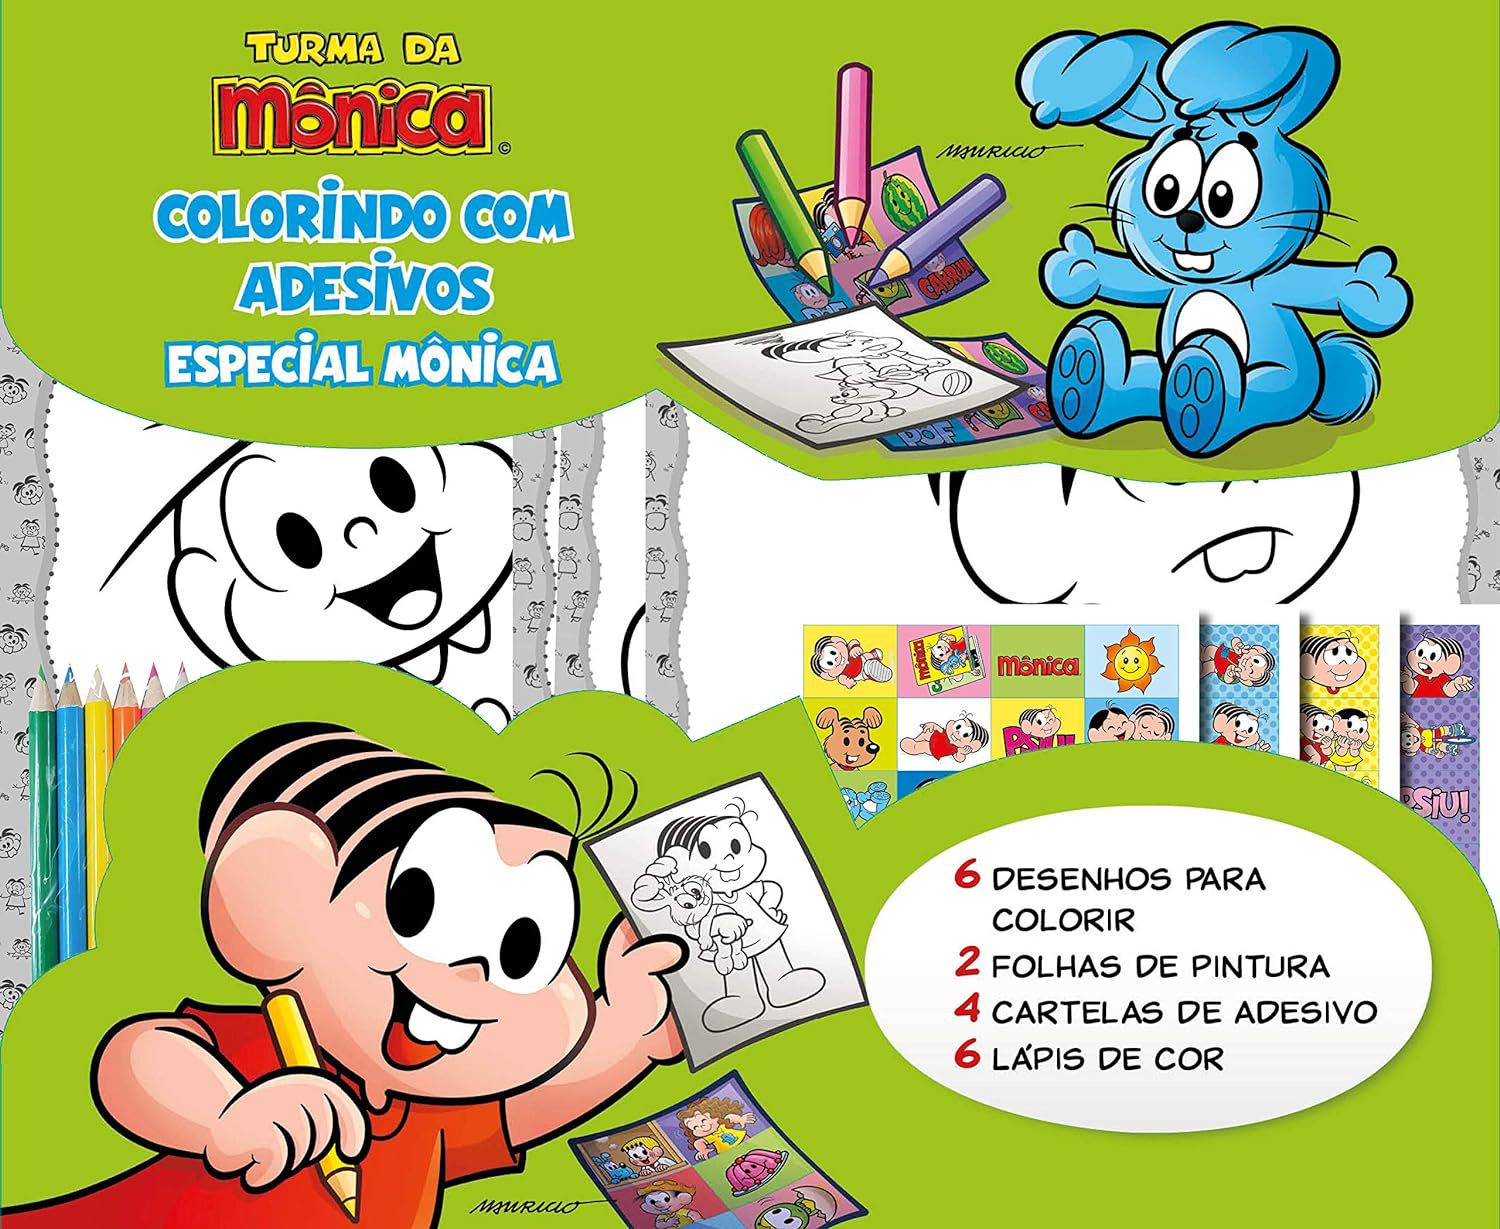 Turma da Mônica para colorir  Monica para colorir, Turma da monica colorir,  Desenhos para colorir